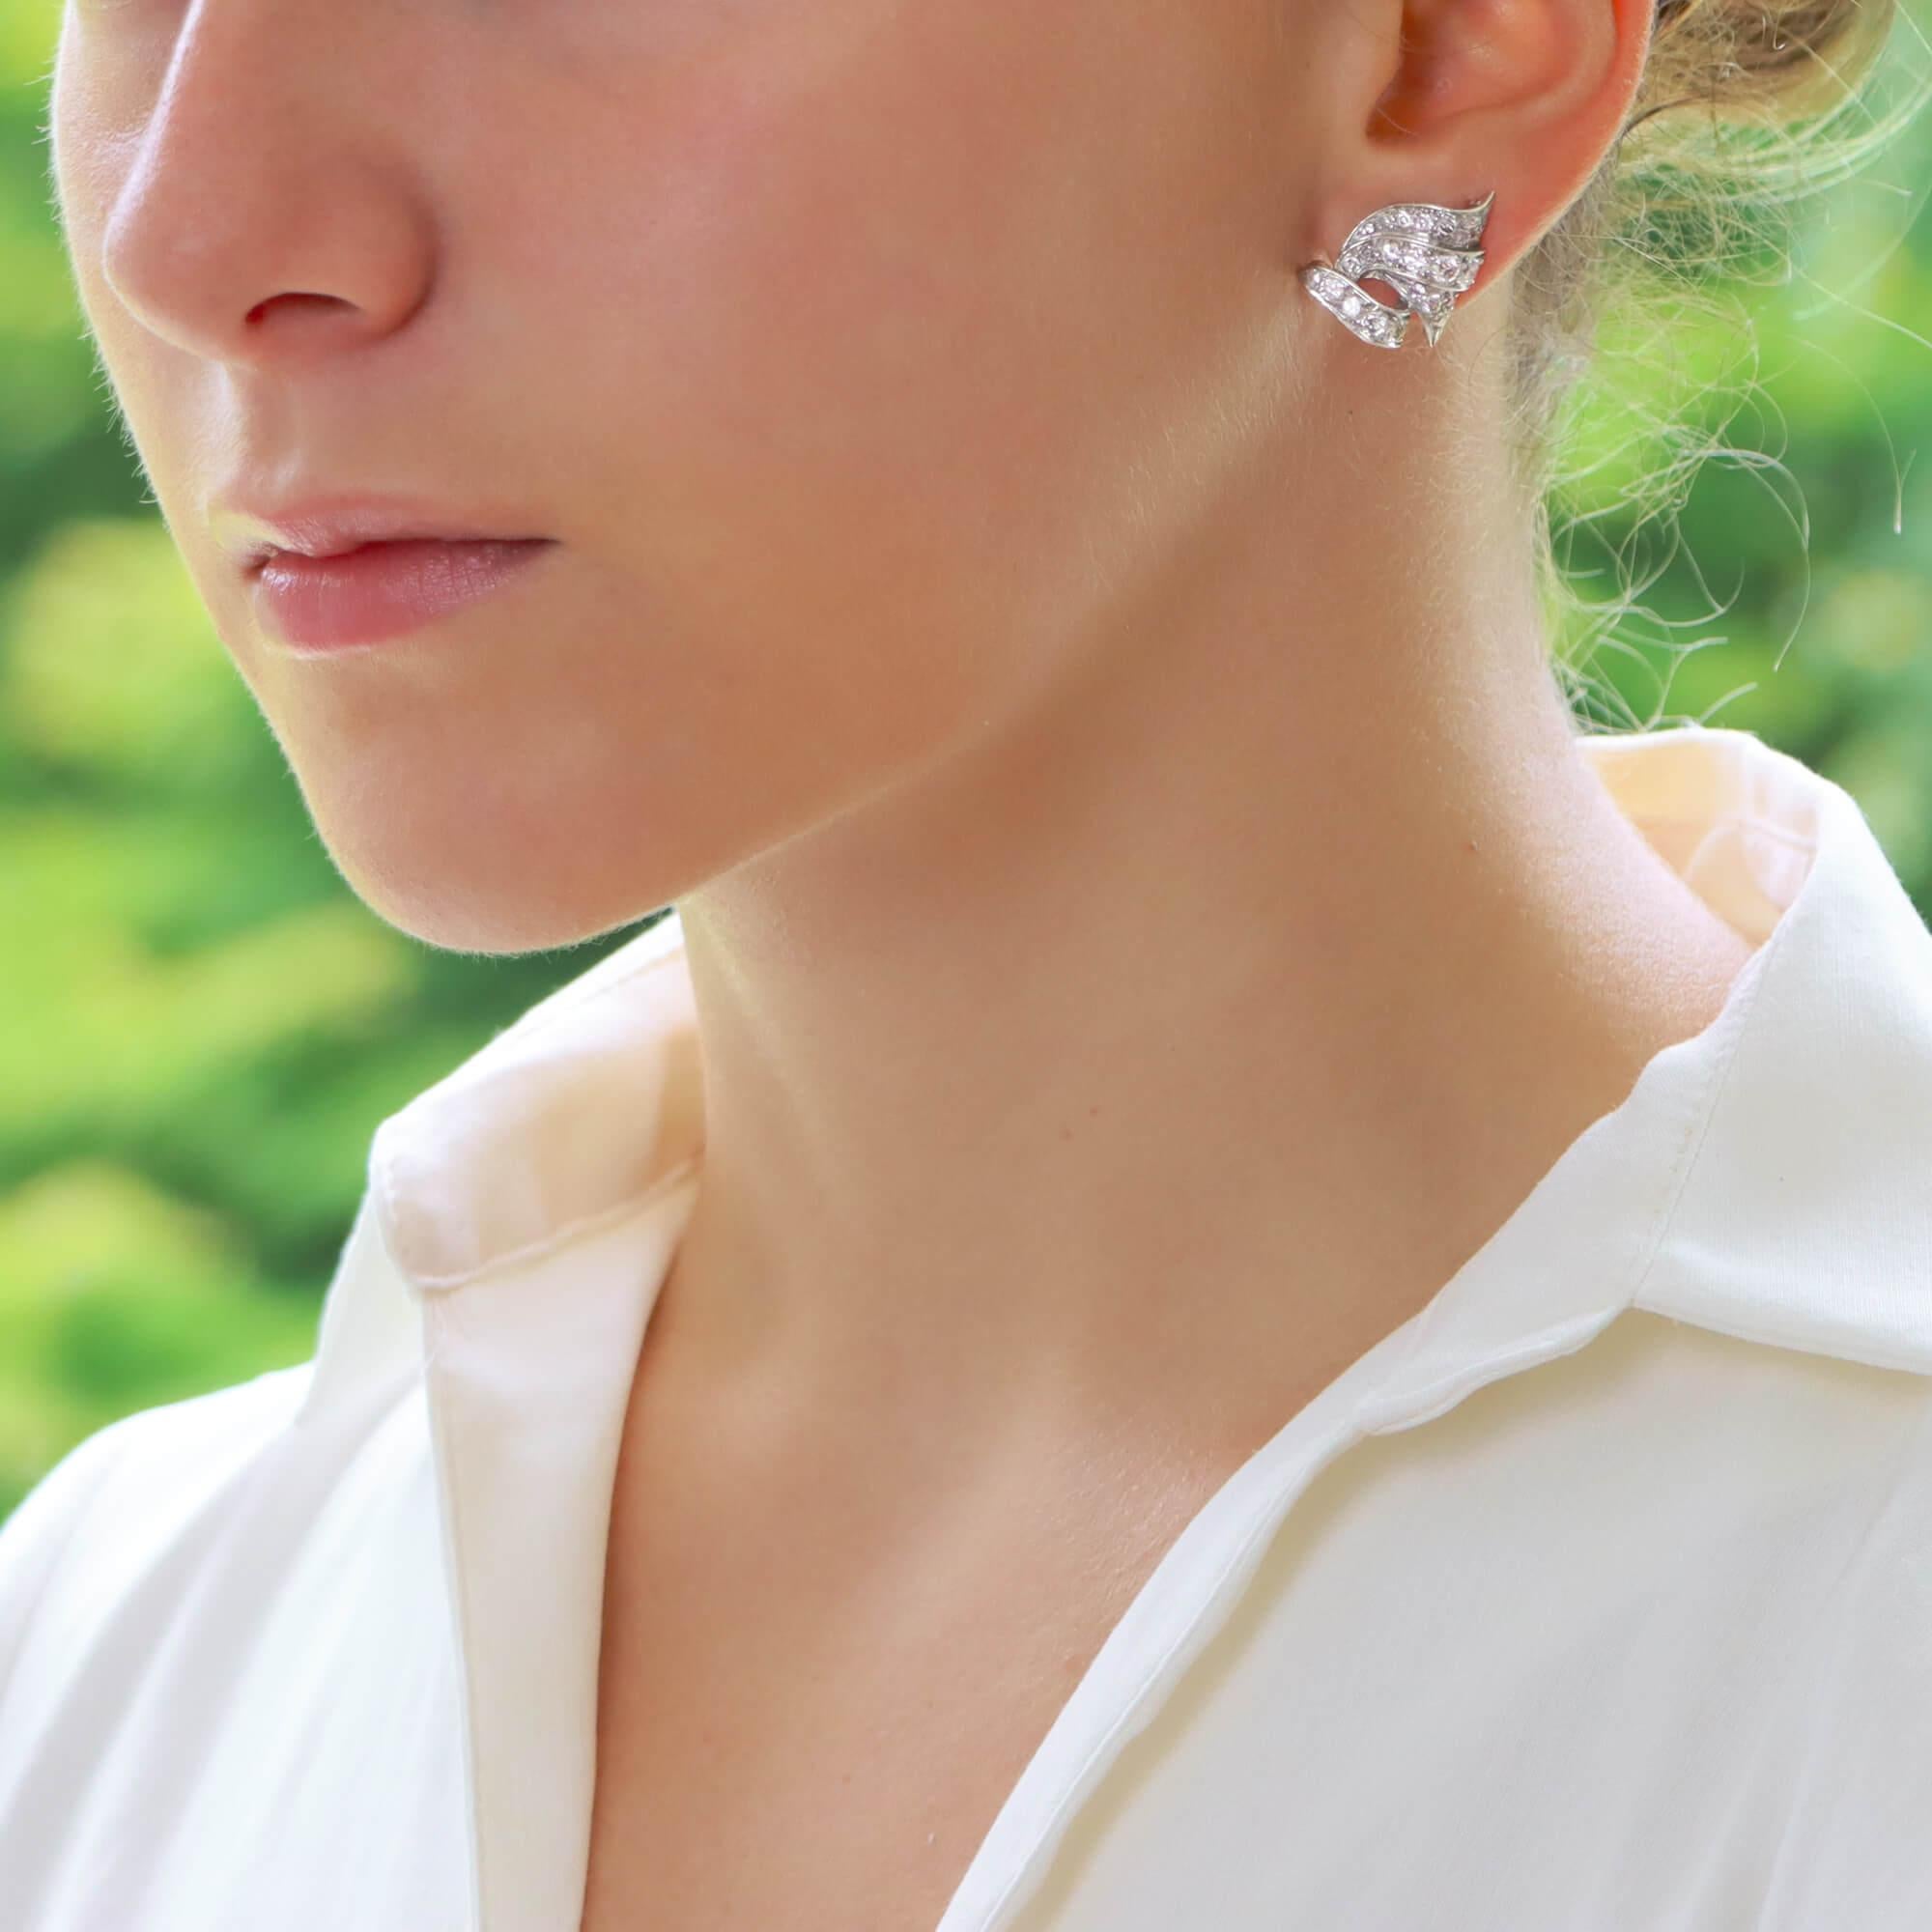 Ein wunderschönes Paar diamantener Ohrringe aus den 1950er Jahren, gefasst in Platin.

Jeder Ohrring zeigt ein zartes, rollenförmiges Design, wobei jeder Teil mit Diamanten im Altminenschliff besetzt ist. Die Ohrringe sind so konzipiert, dass sie